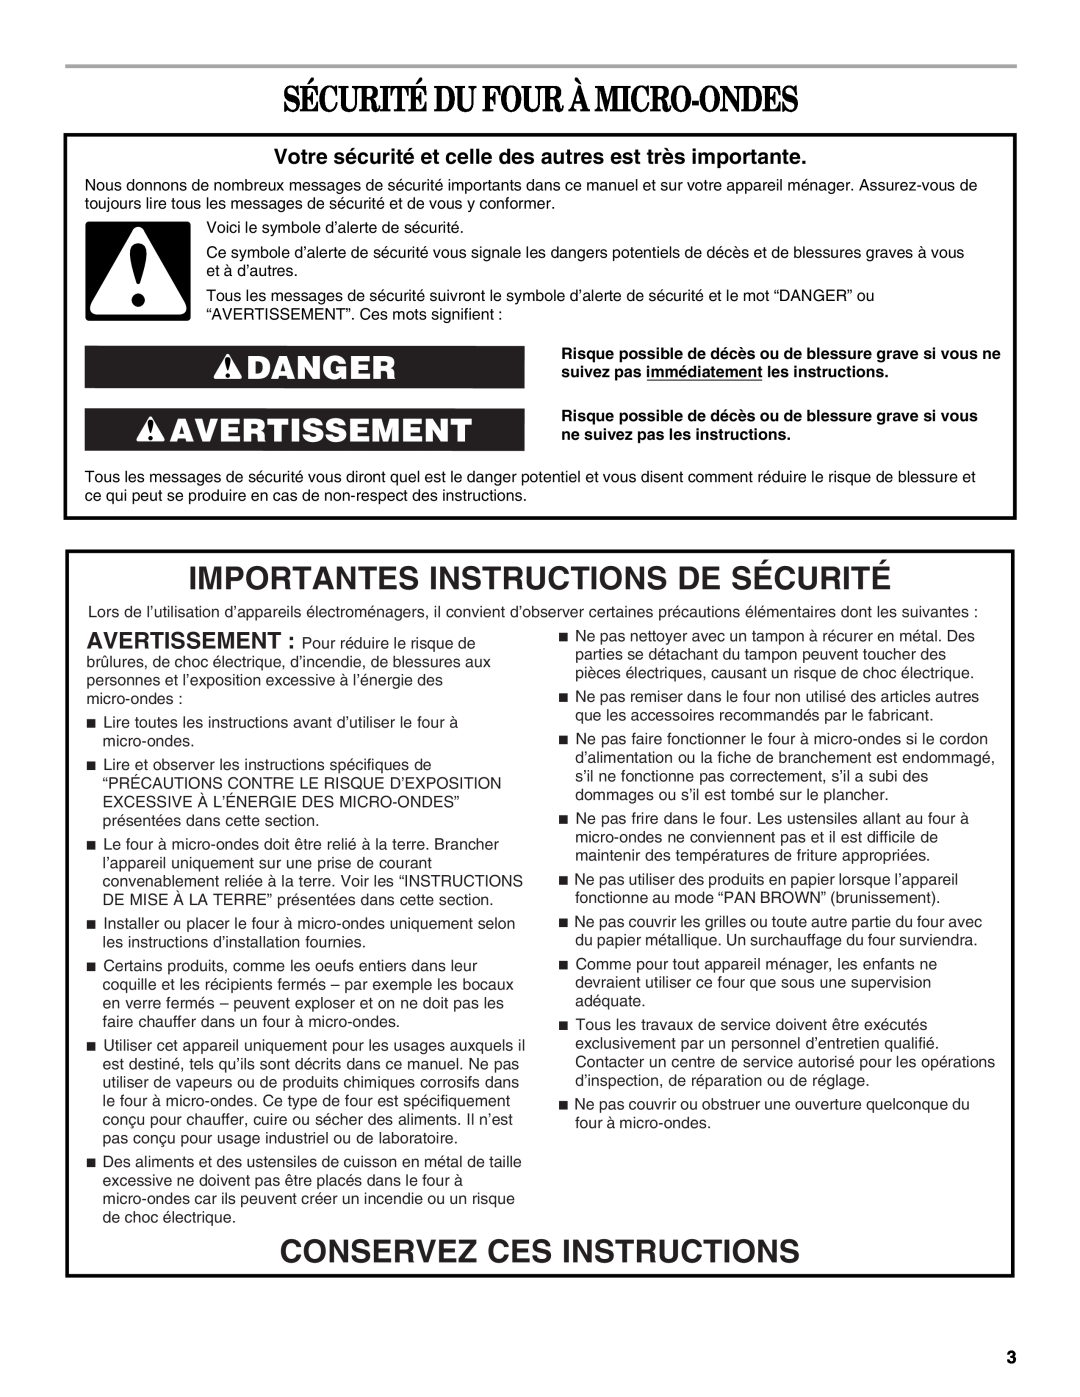 Whirlpool GMC275, GMC305 manual Sécurité Du Four À Micro-Ondes, Danger Avertissement, Importantes Instructions De Sécurité 